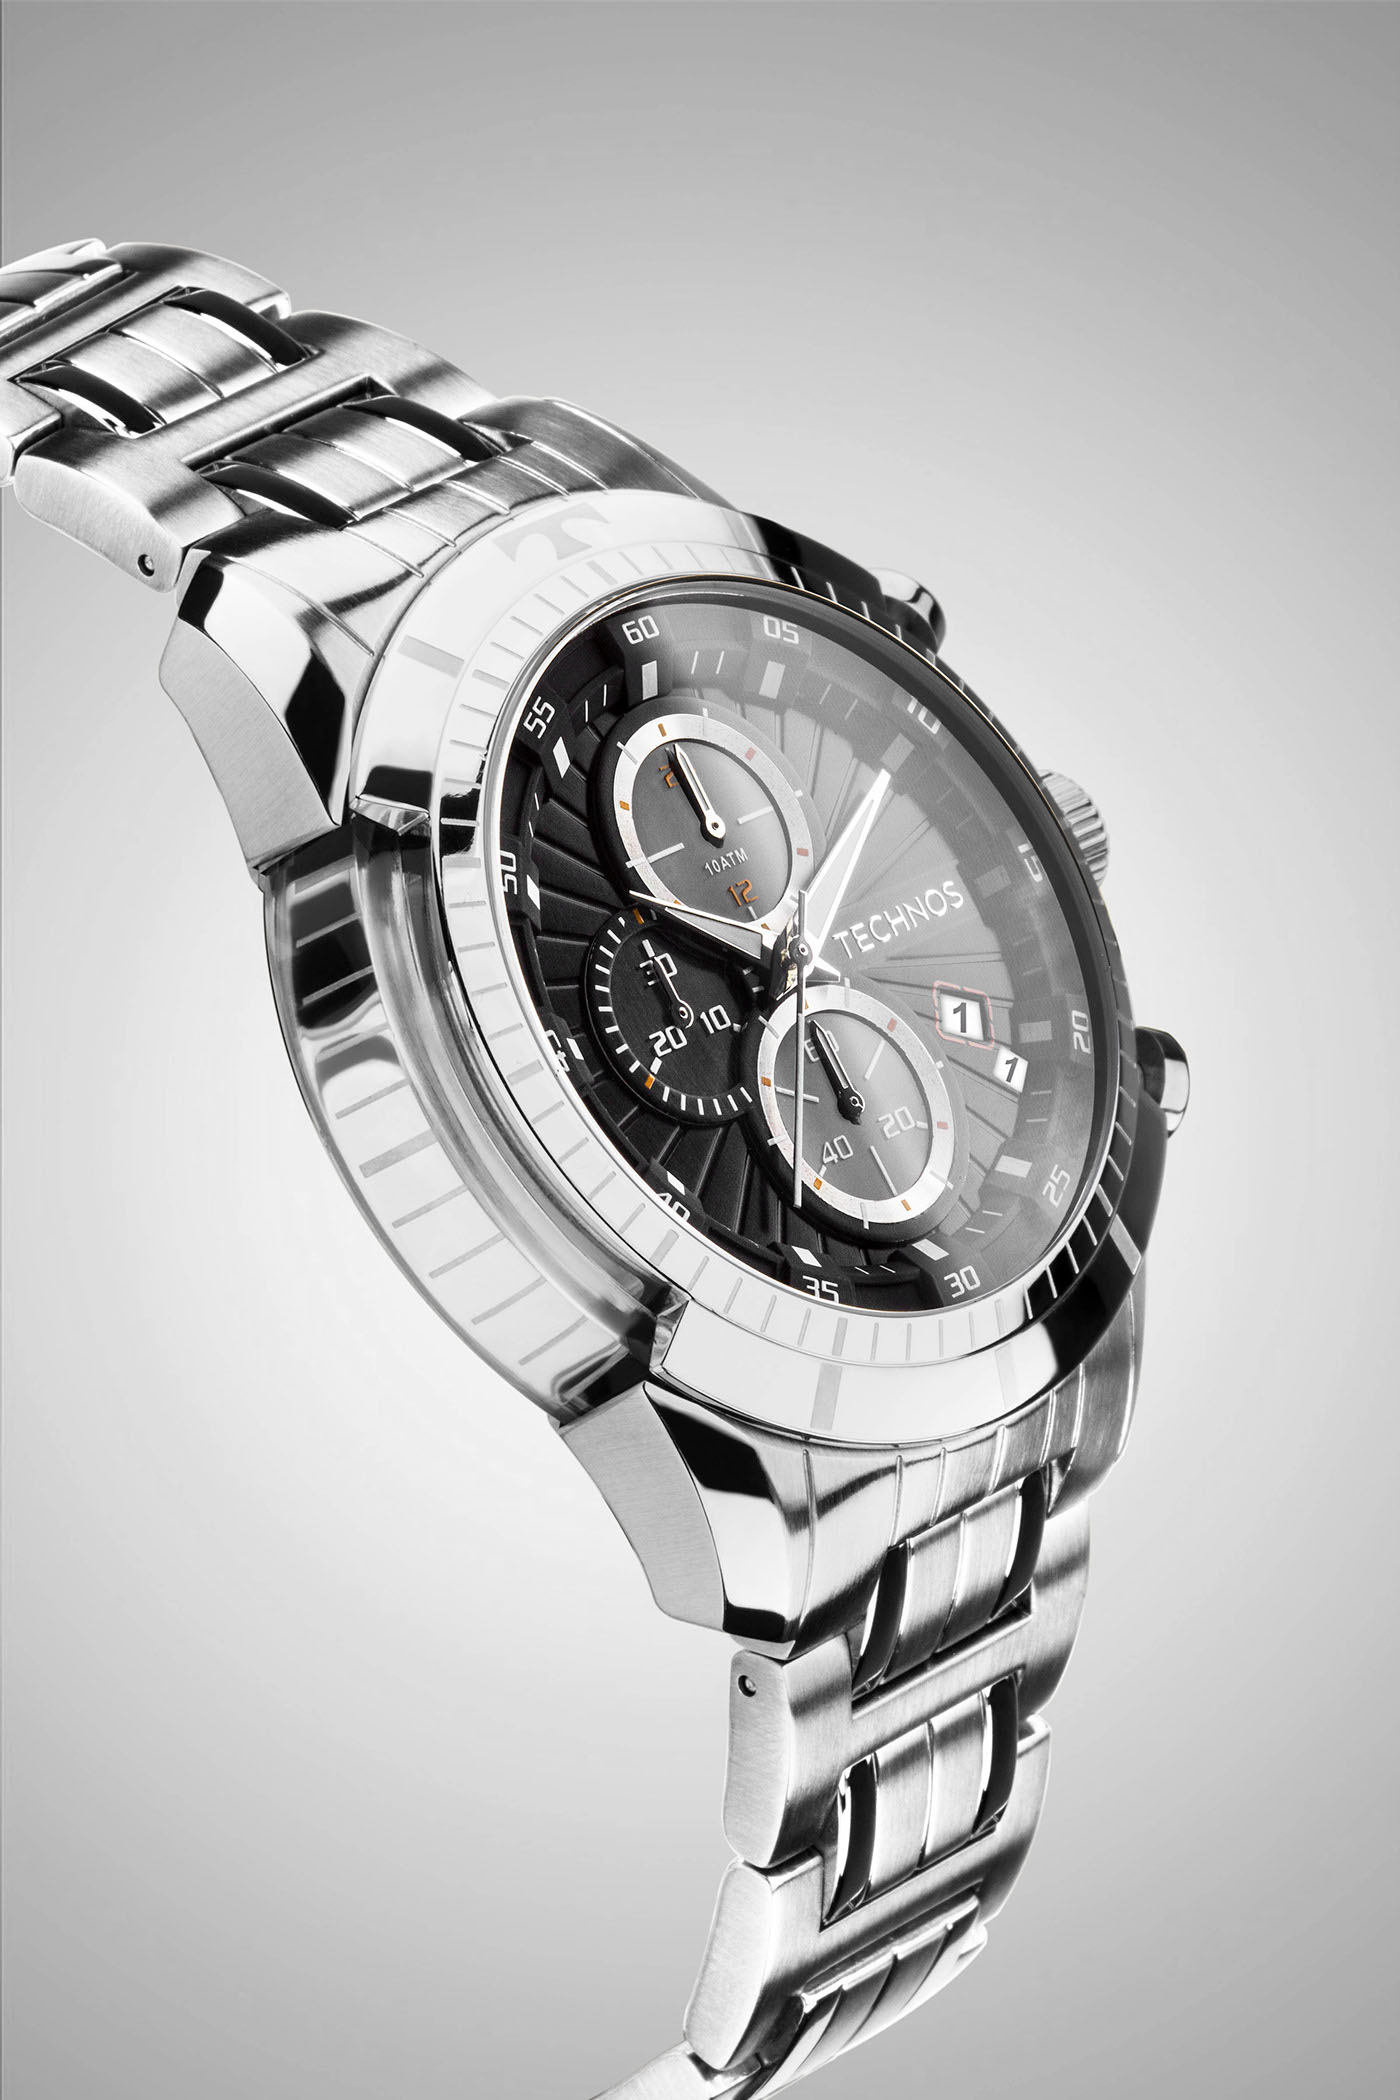 Watches Relógios produto product stillshots publicity publicidade Technos